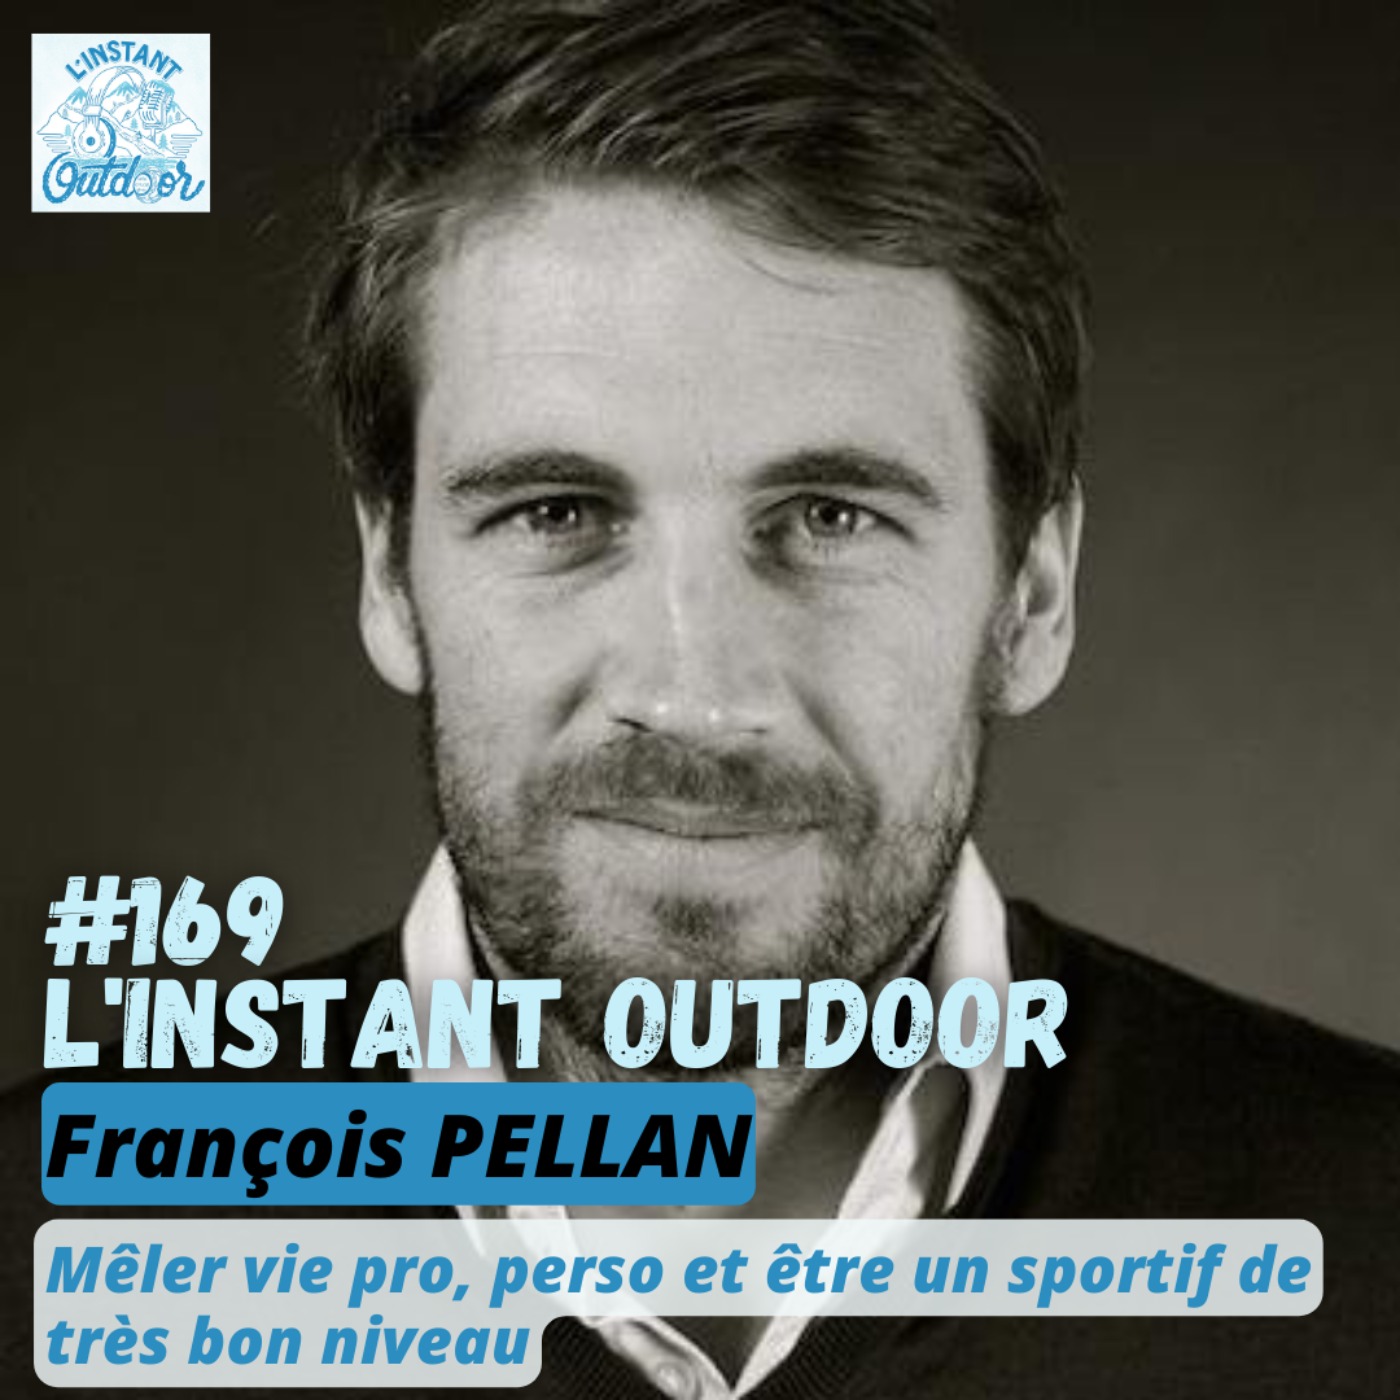 François Pellan - Mêler vie pro, perso et être un sportif de très bon niveau